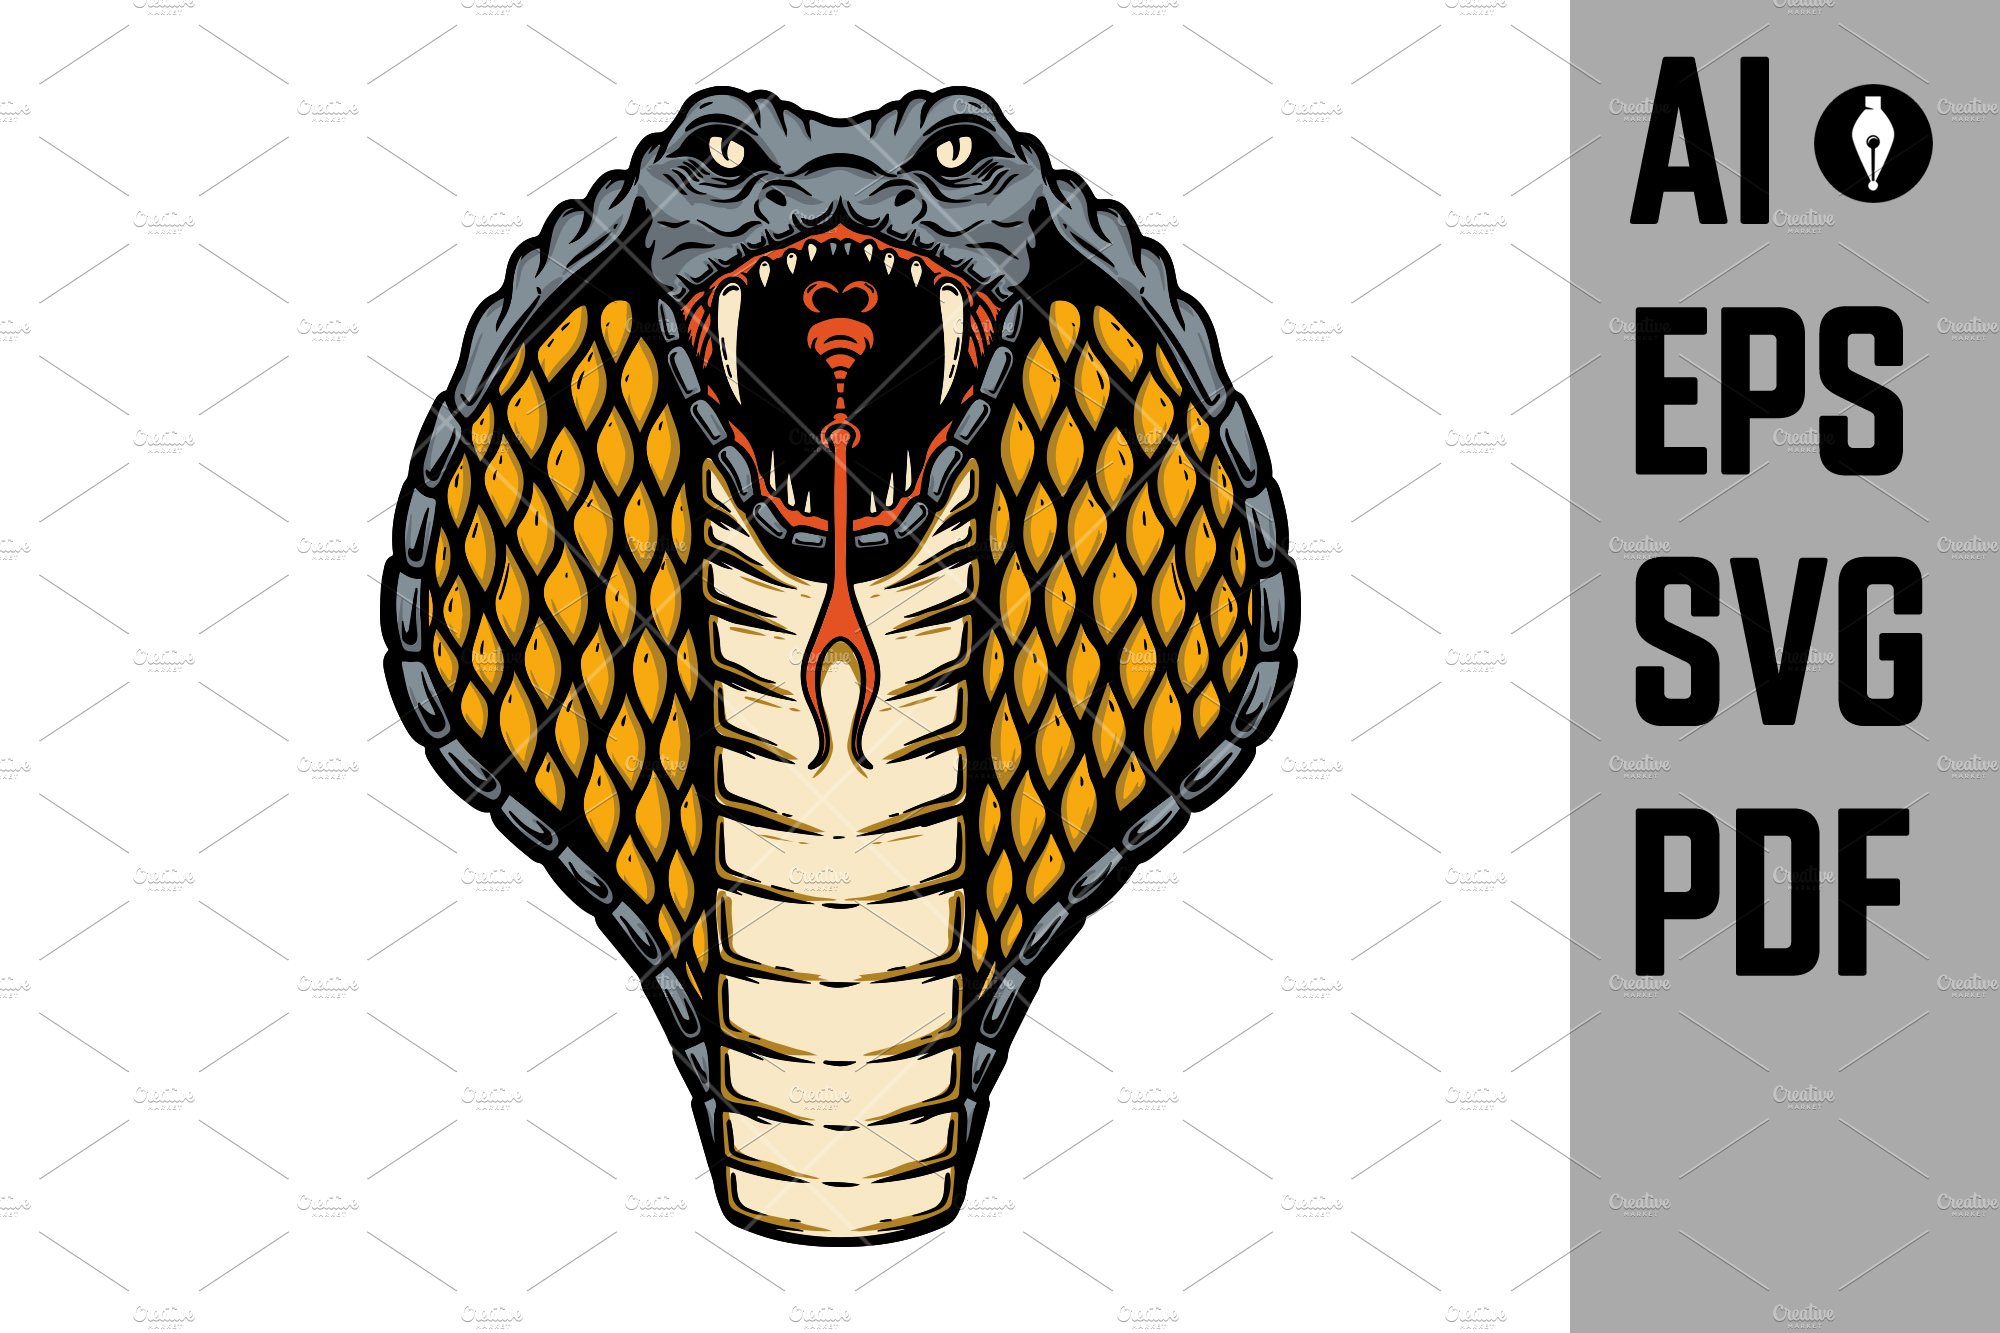 Illustration of cobra snake. Design cover image.